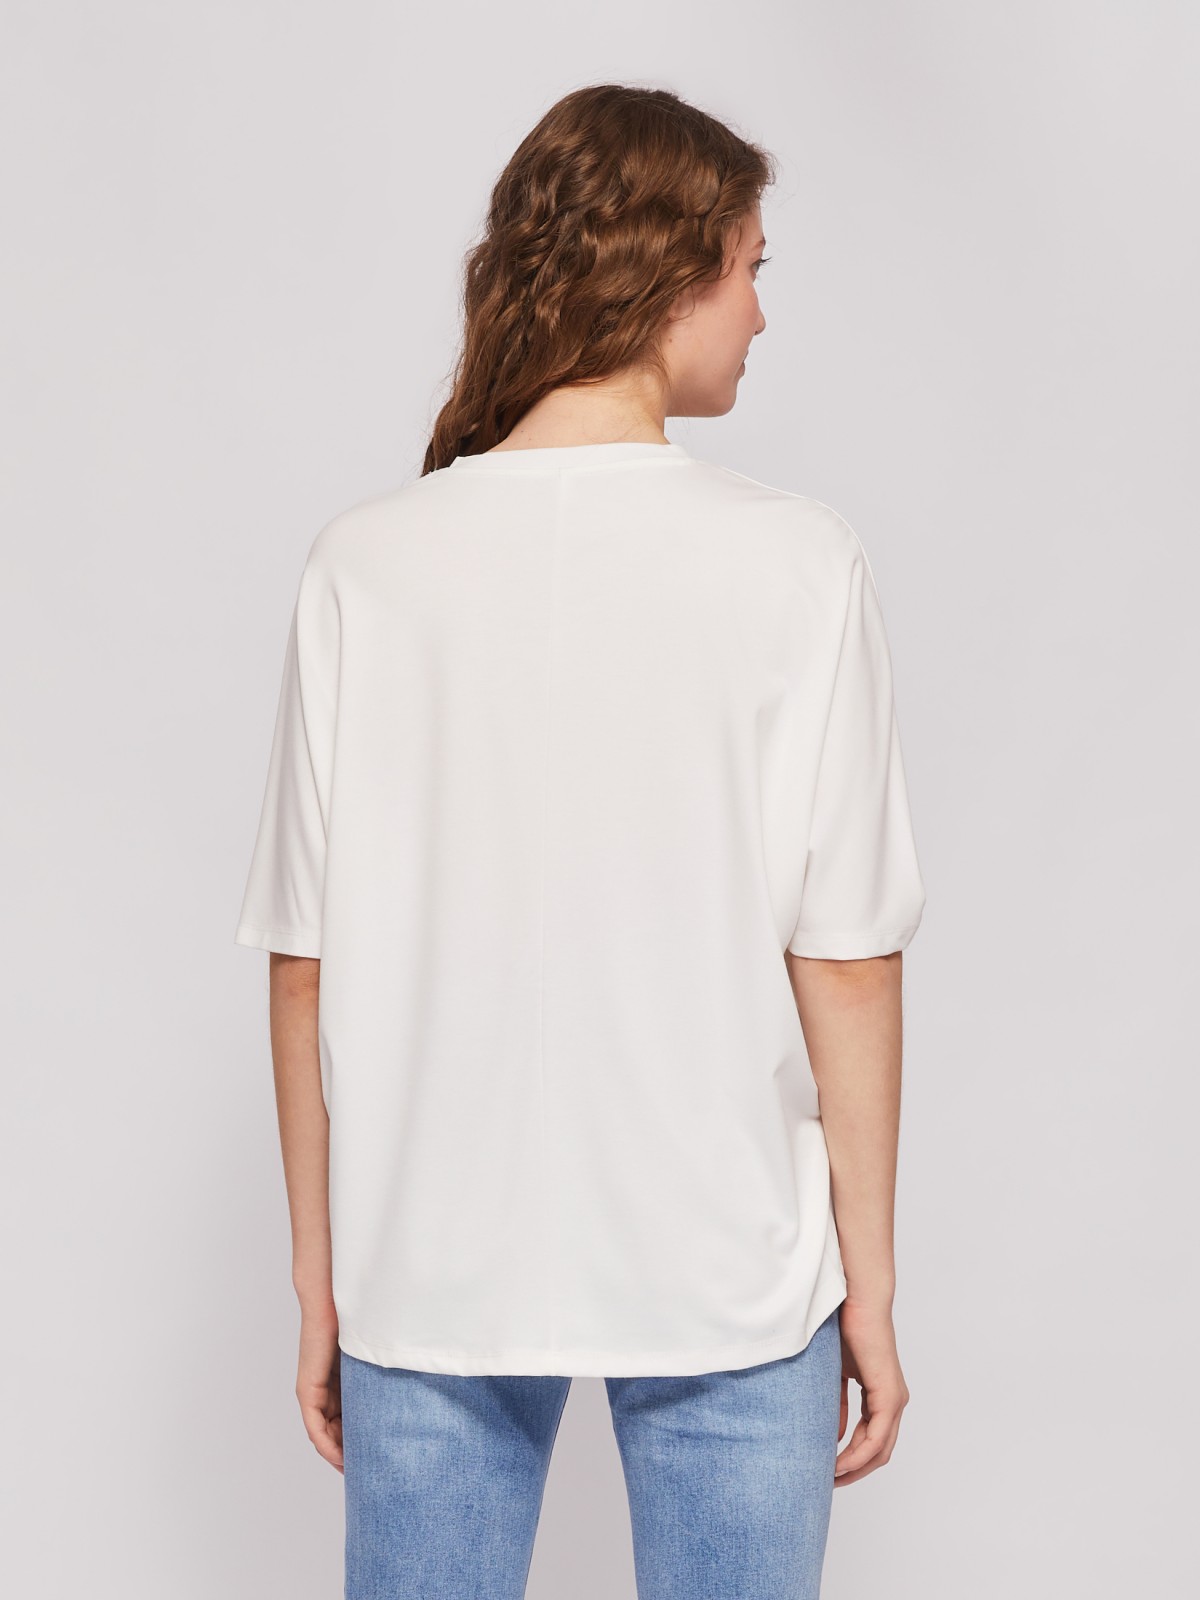 Блузка-футболка с коротким рукавом и цветочным принтом zolla 024213210111, размер M - фото 6